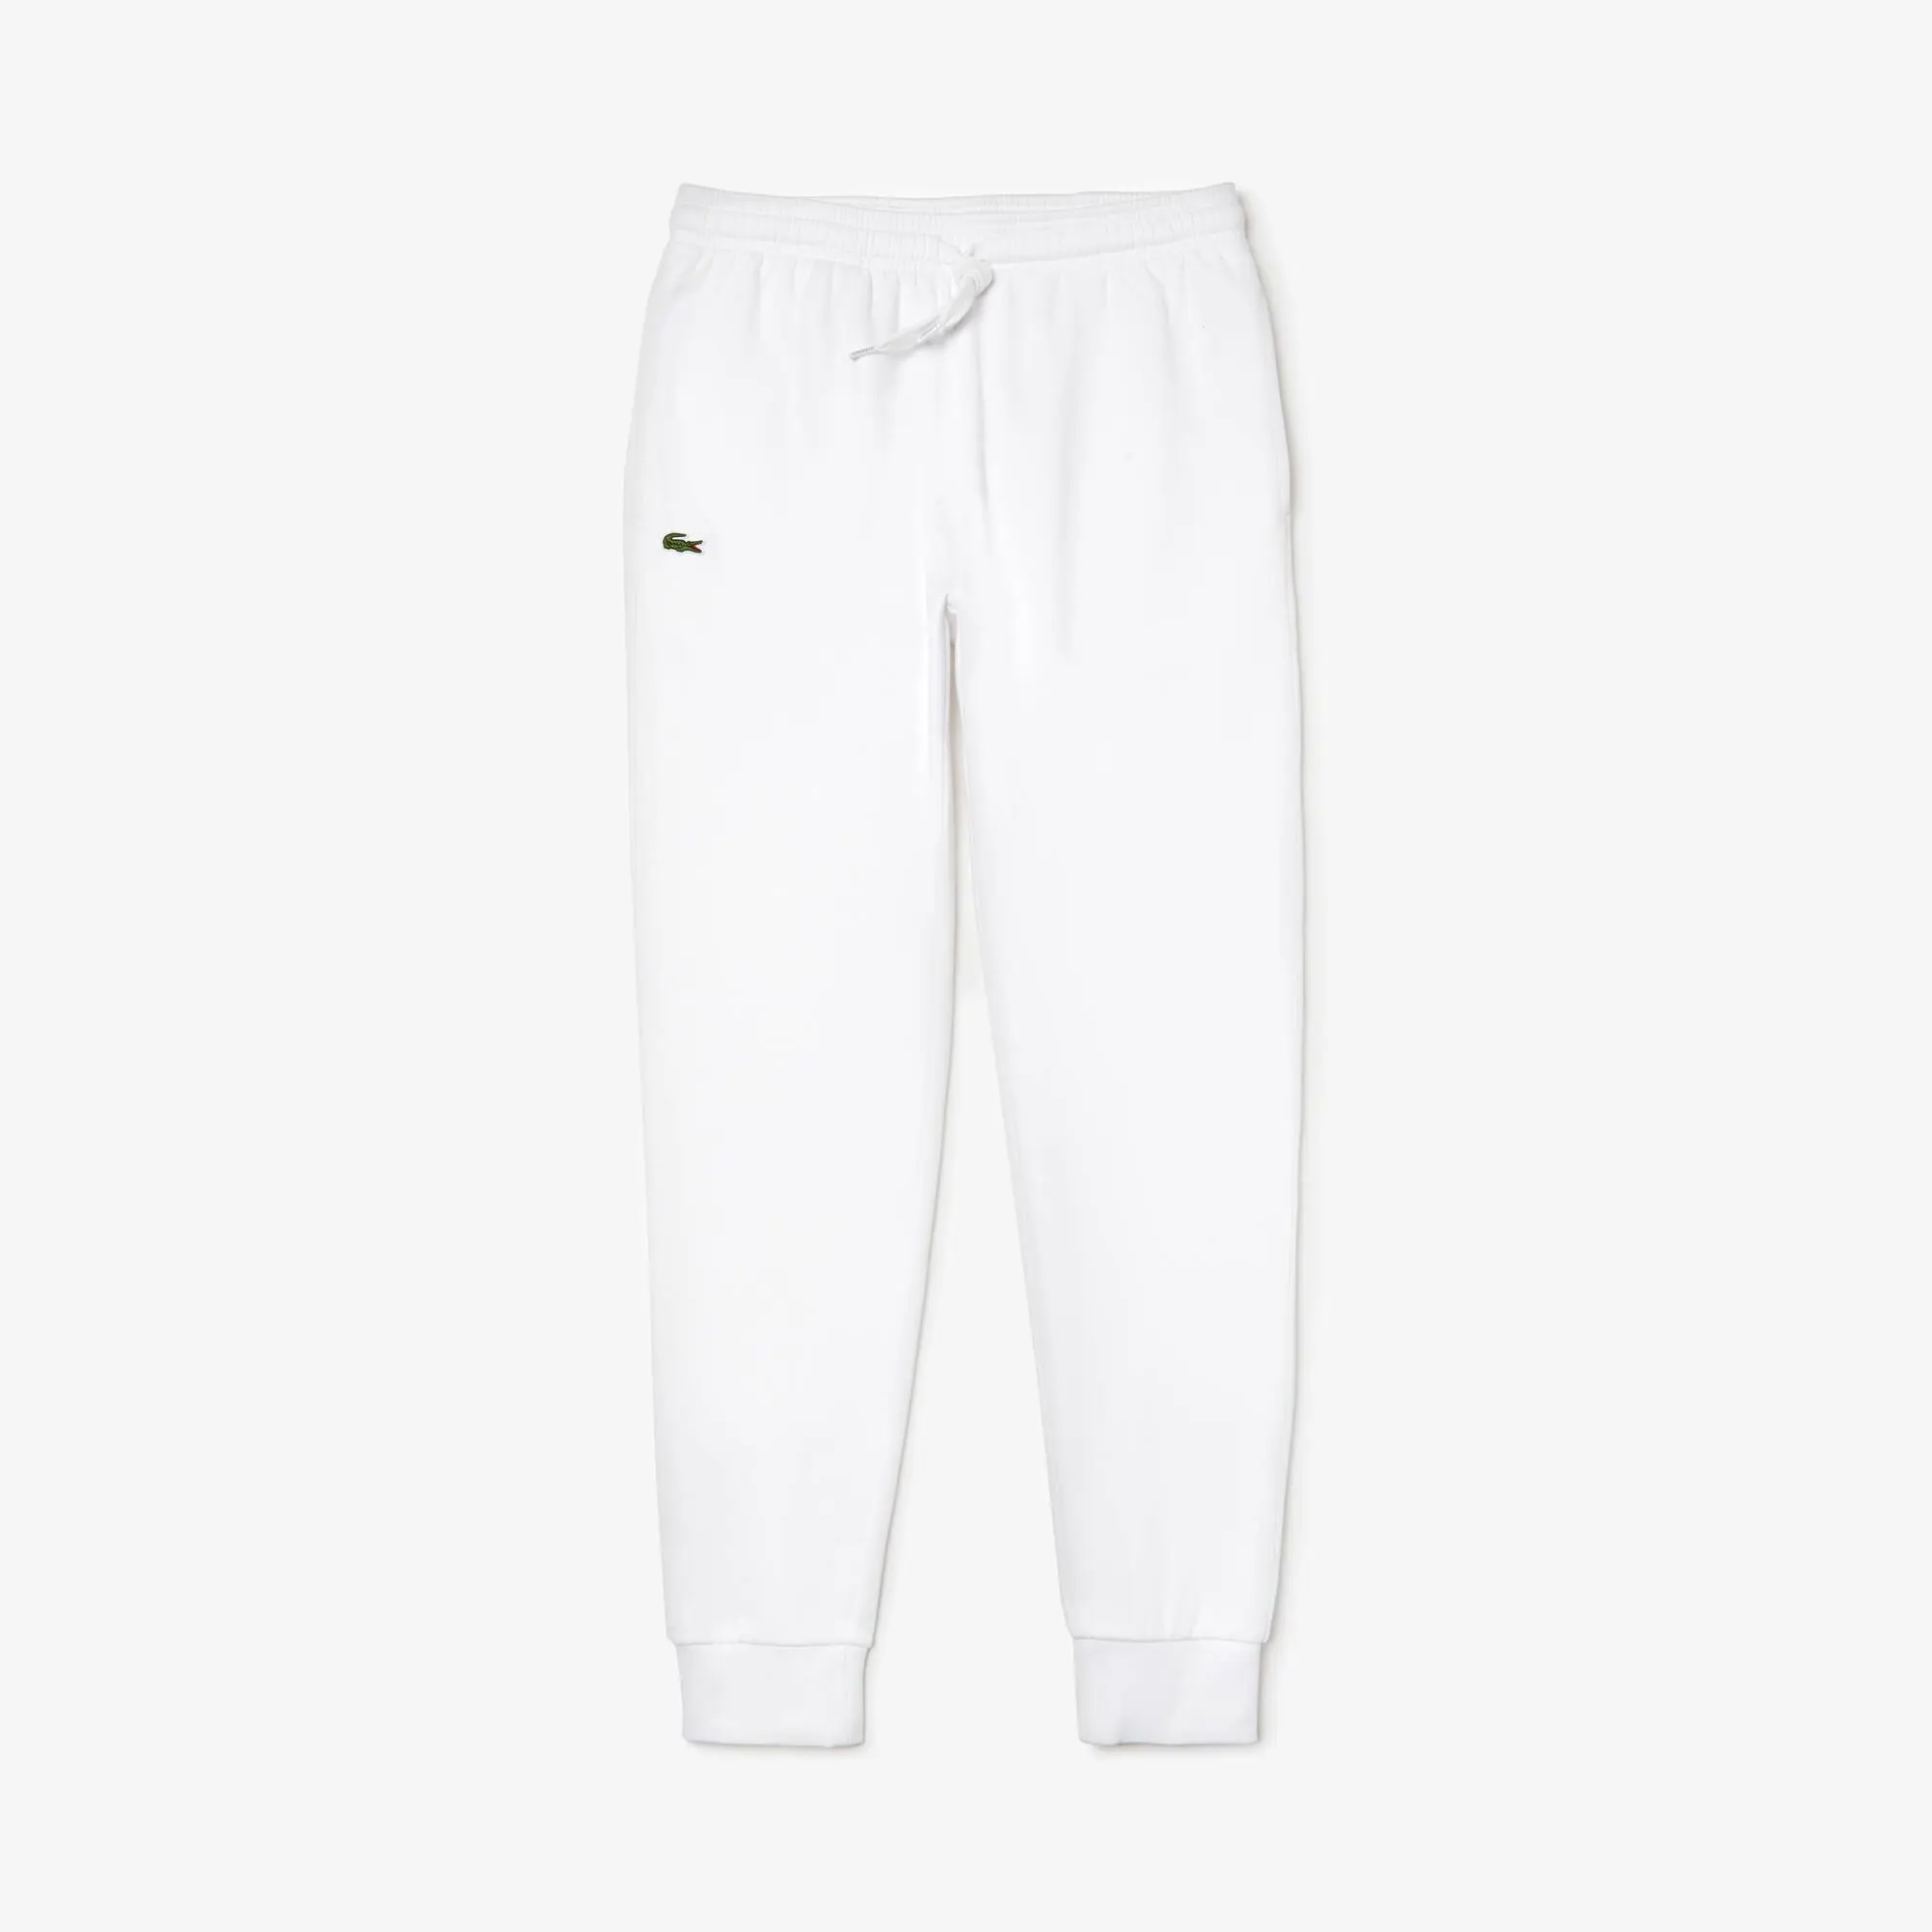 Lacoste Pantalones deportivos Lacoste SPORT Tennis en tejido polar para hombre. 2